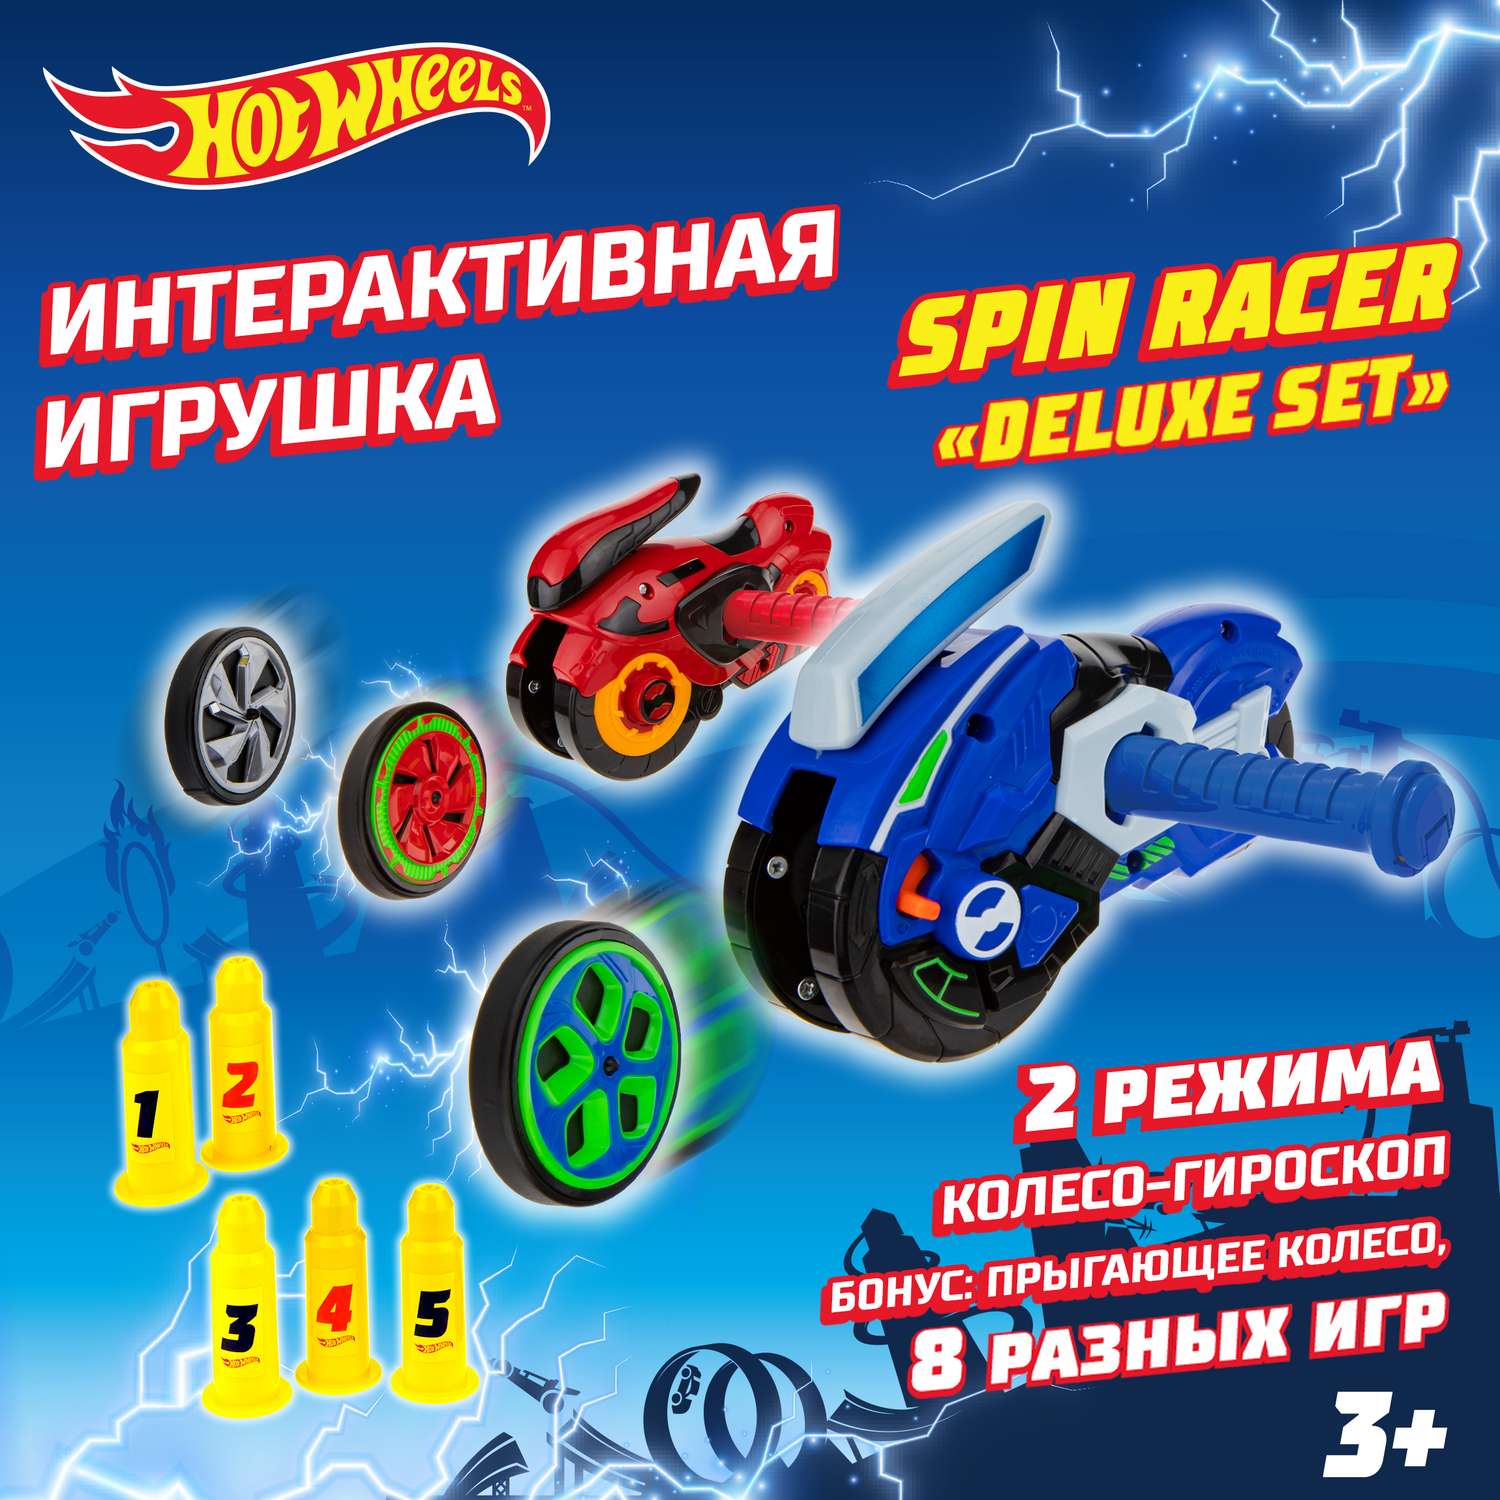 Игровой набор Hot Wheels Spin Racer Deluxe Set 2 игрушечных мотоцикла с колесами-гироскопами Т19375 - фото 1